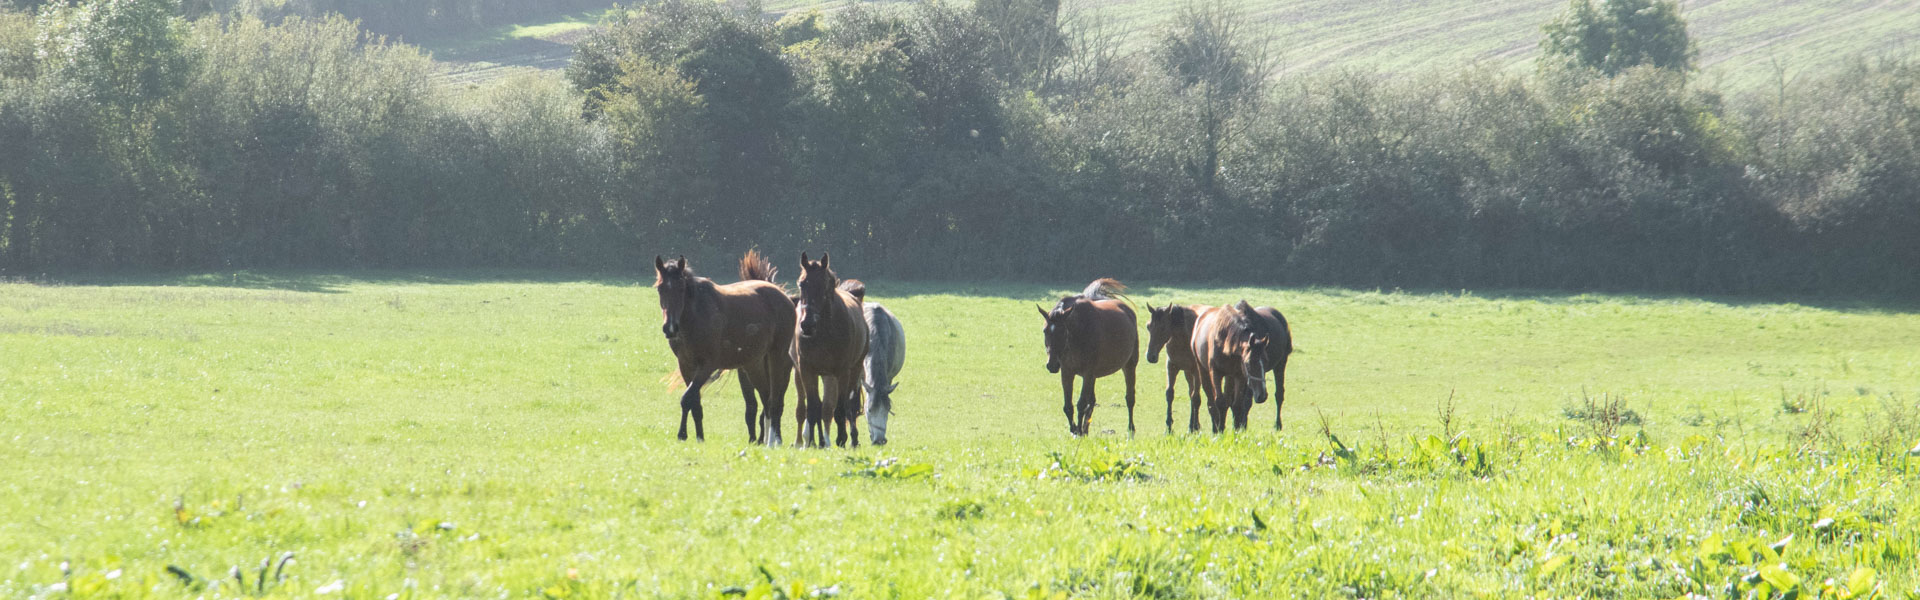 blog actualite cheval equitation horse spirit cavalier tips aide débutant